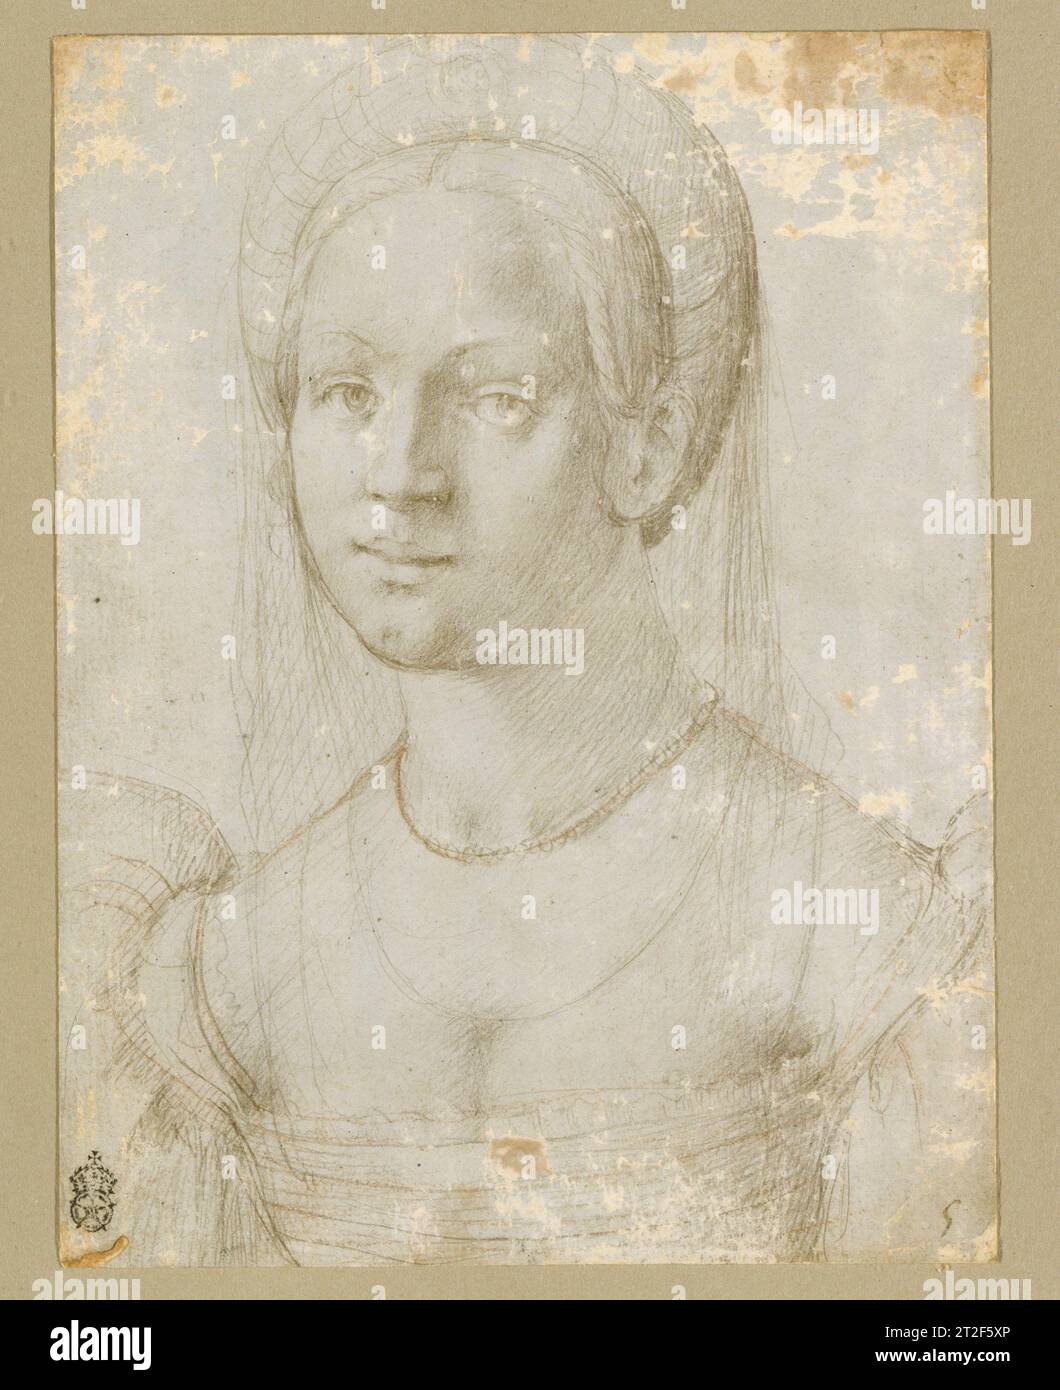 Porträt einer jungen Frau, zugeschrieben von Pier Francesco Foschi (Pier Francesco Toschi) Florenz 1520–39 diese filigrane Studie für ein Porträt einer Frau, die direkt auf den Betrachter blickt, kann auf das frühe 16. Jahrhundert datiert werden, basierend auf dem Stil ihrer Kleidung. Ähnliche Kopfbedeckungen und Kleidungsstücke mit quadratischem Oberteil und Puffärmeln erscheinen in Florentiner Porträts dieser Zeit. Die Zeichnung wurde mit der Schule der manieristischen Maler Pontormo und Rosso Fiorentino in Verbindung gebracht und könnte von Pier Francesco Foschi ausgeführt worden sein, der, zusammen mit diesen beiden Meistern, dies war Stockfoto